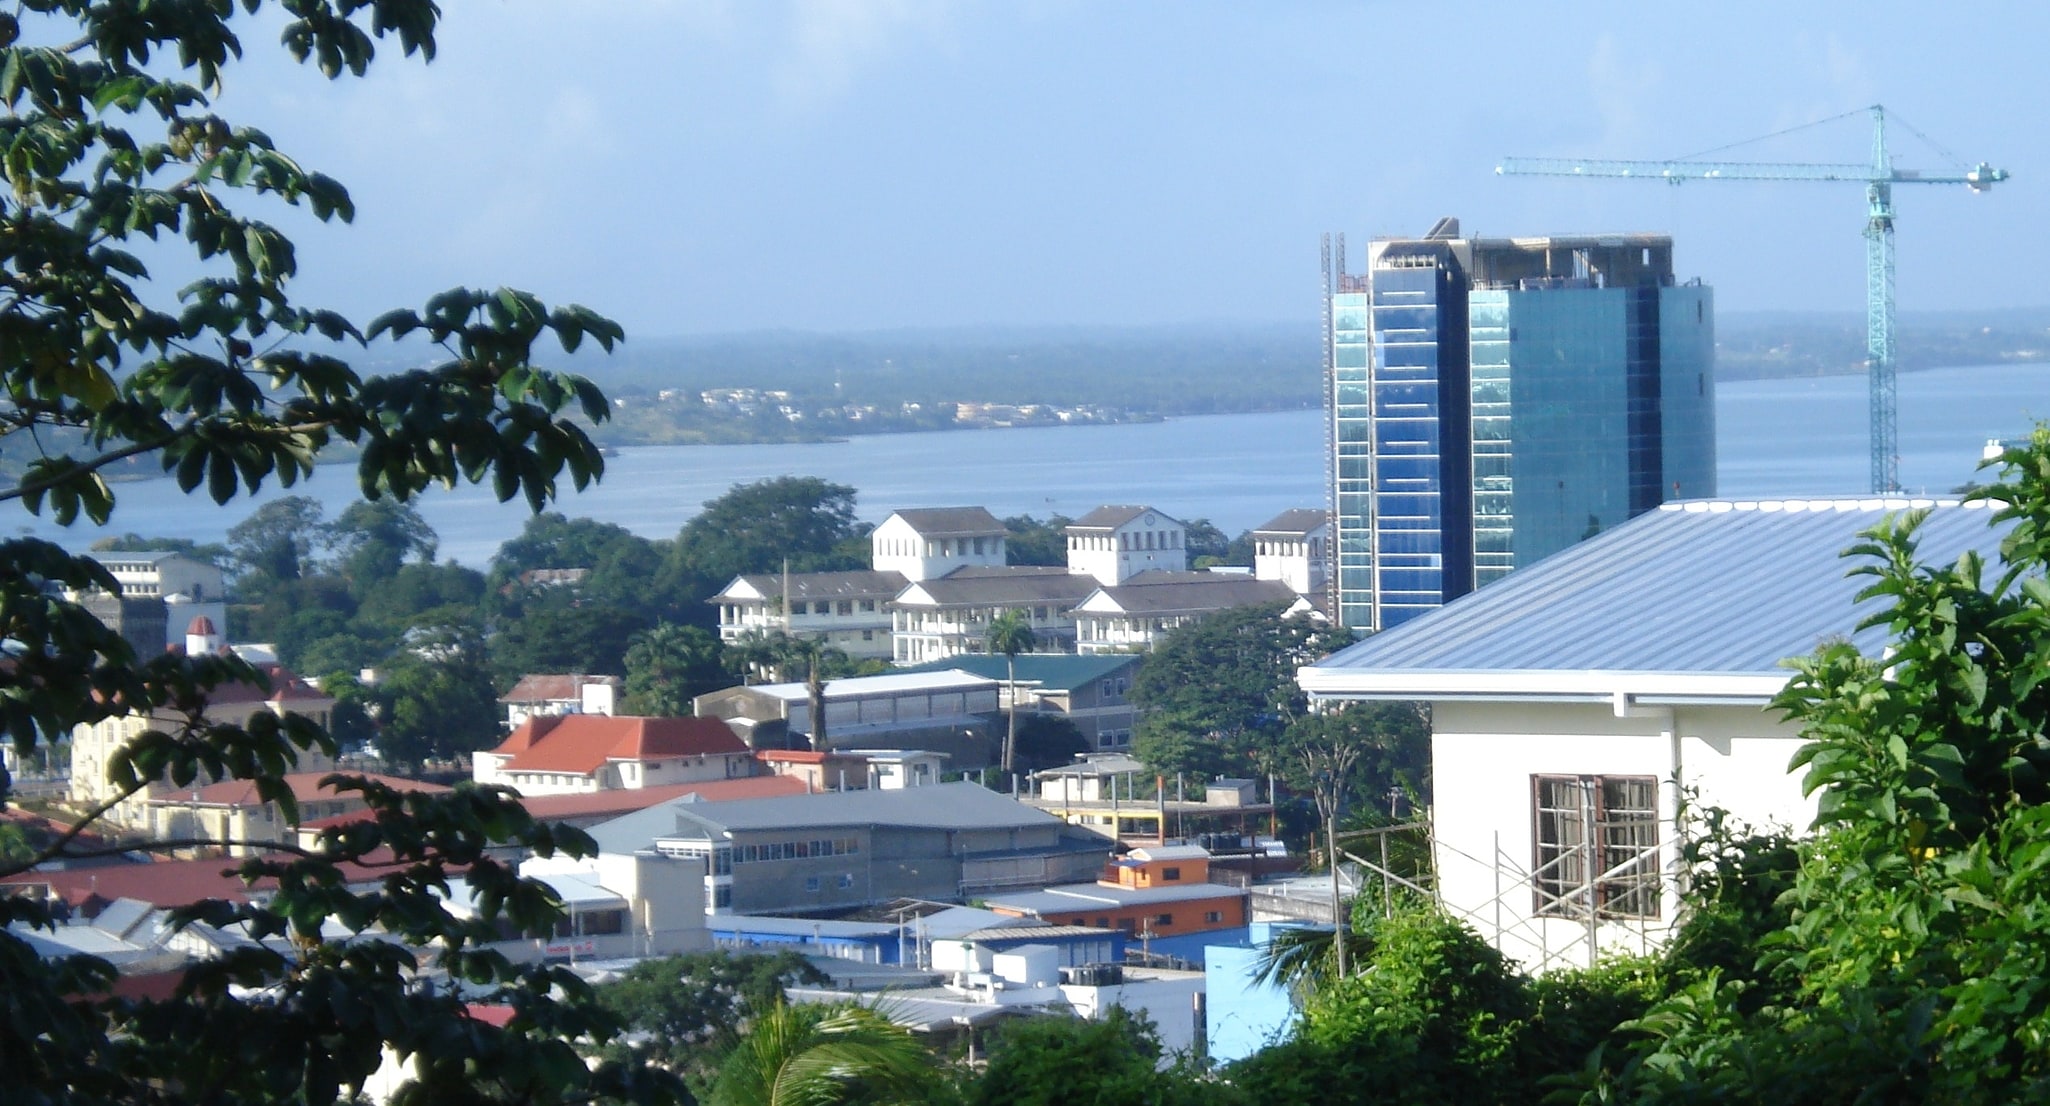 San Fernando, Trinidad and Tobago